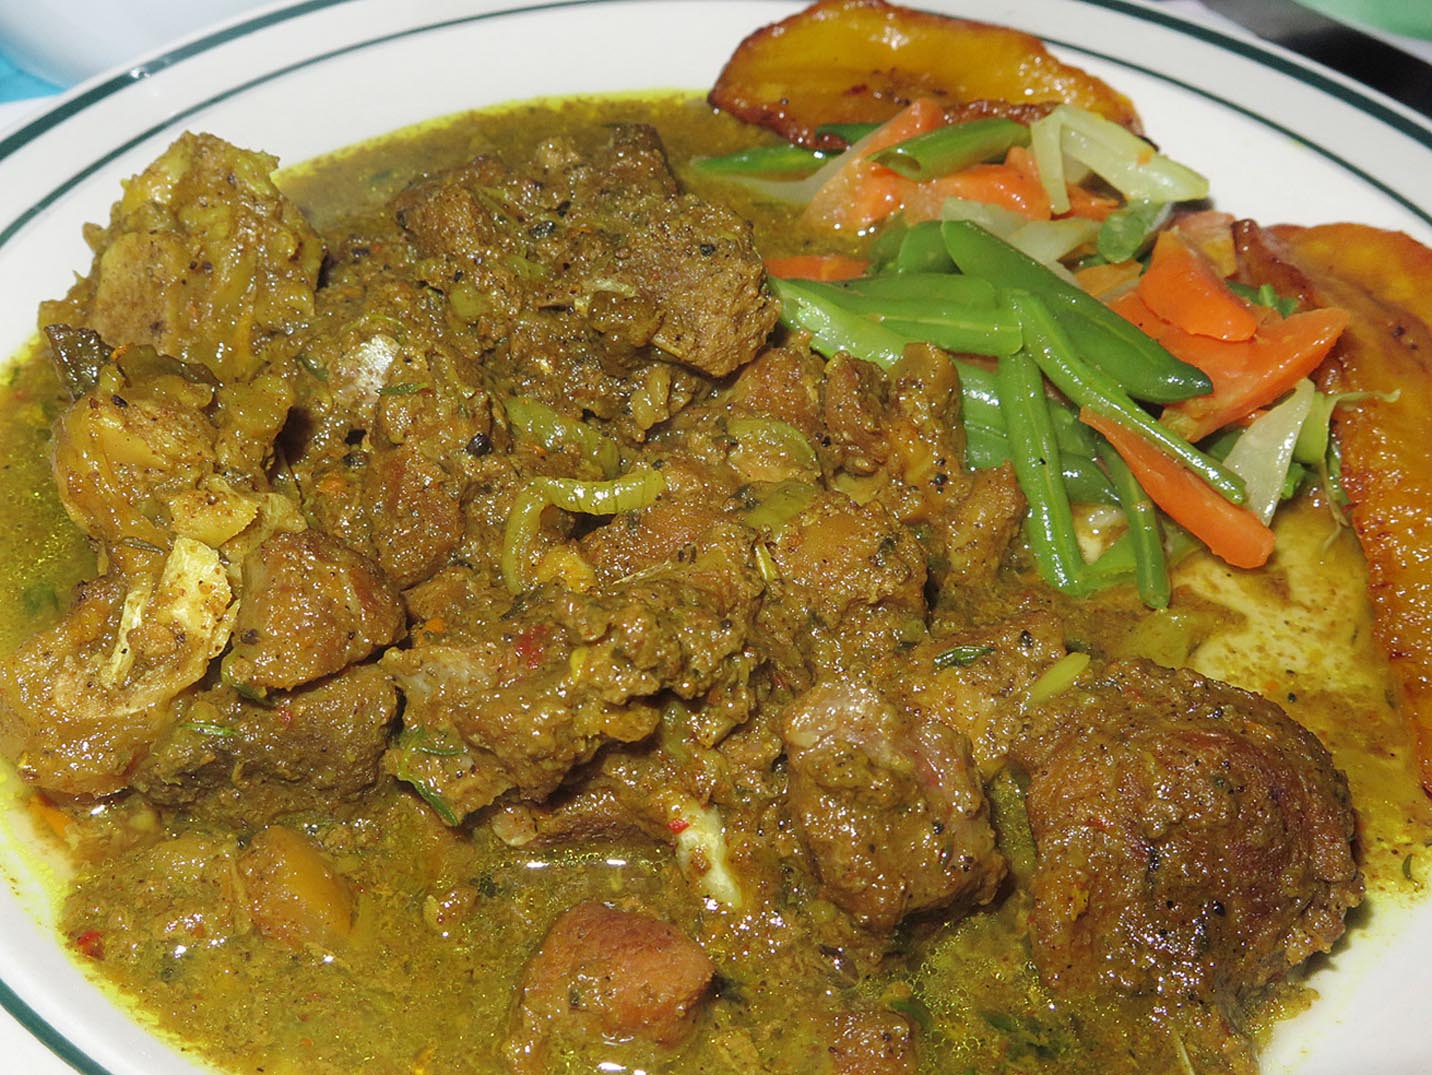 Curry goat from Port Antonio, Jamaica